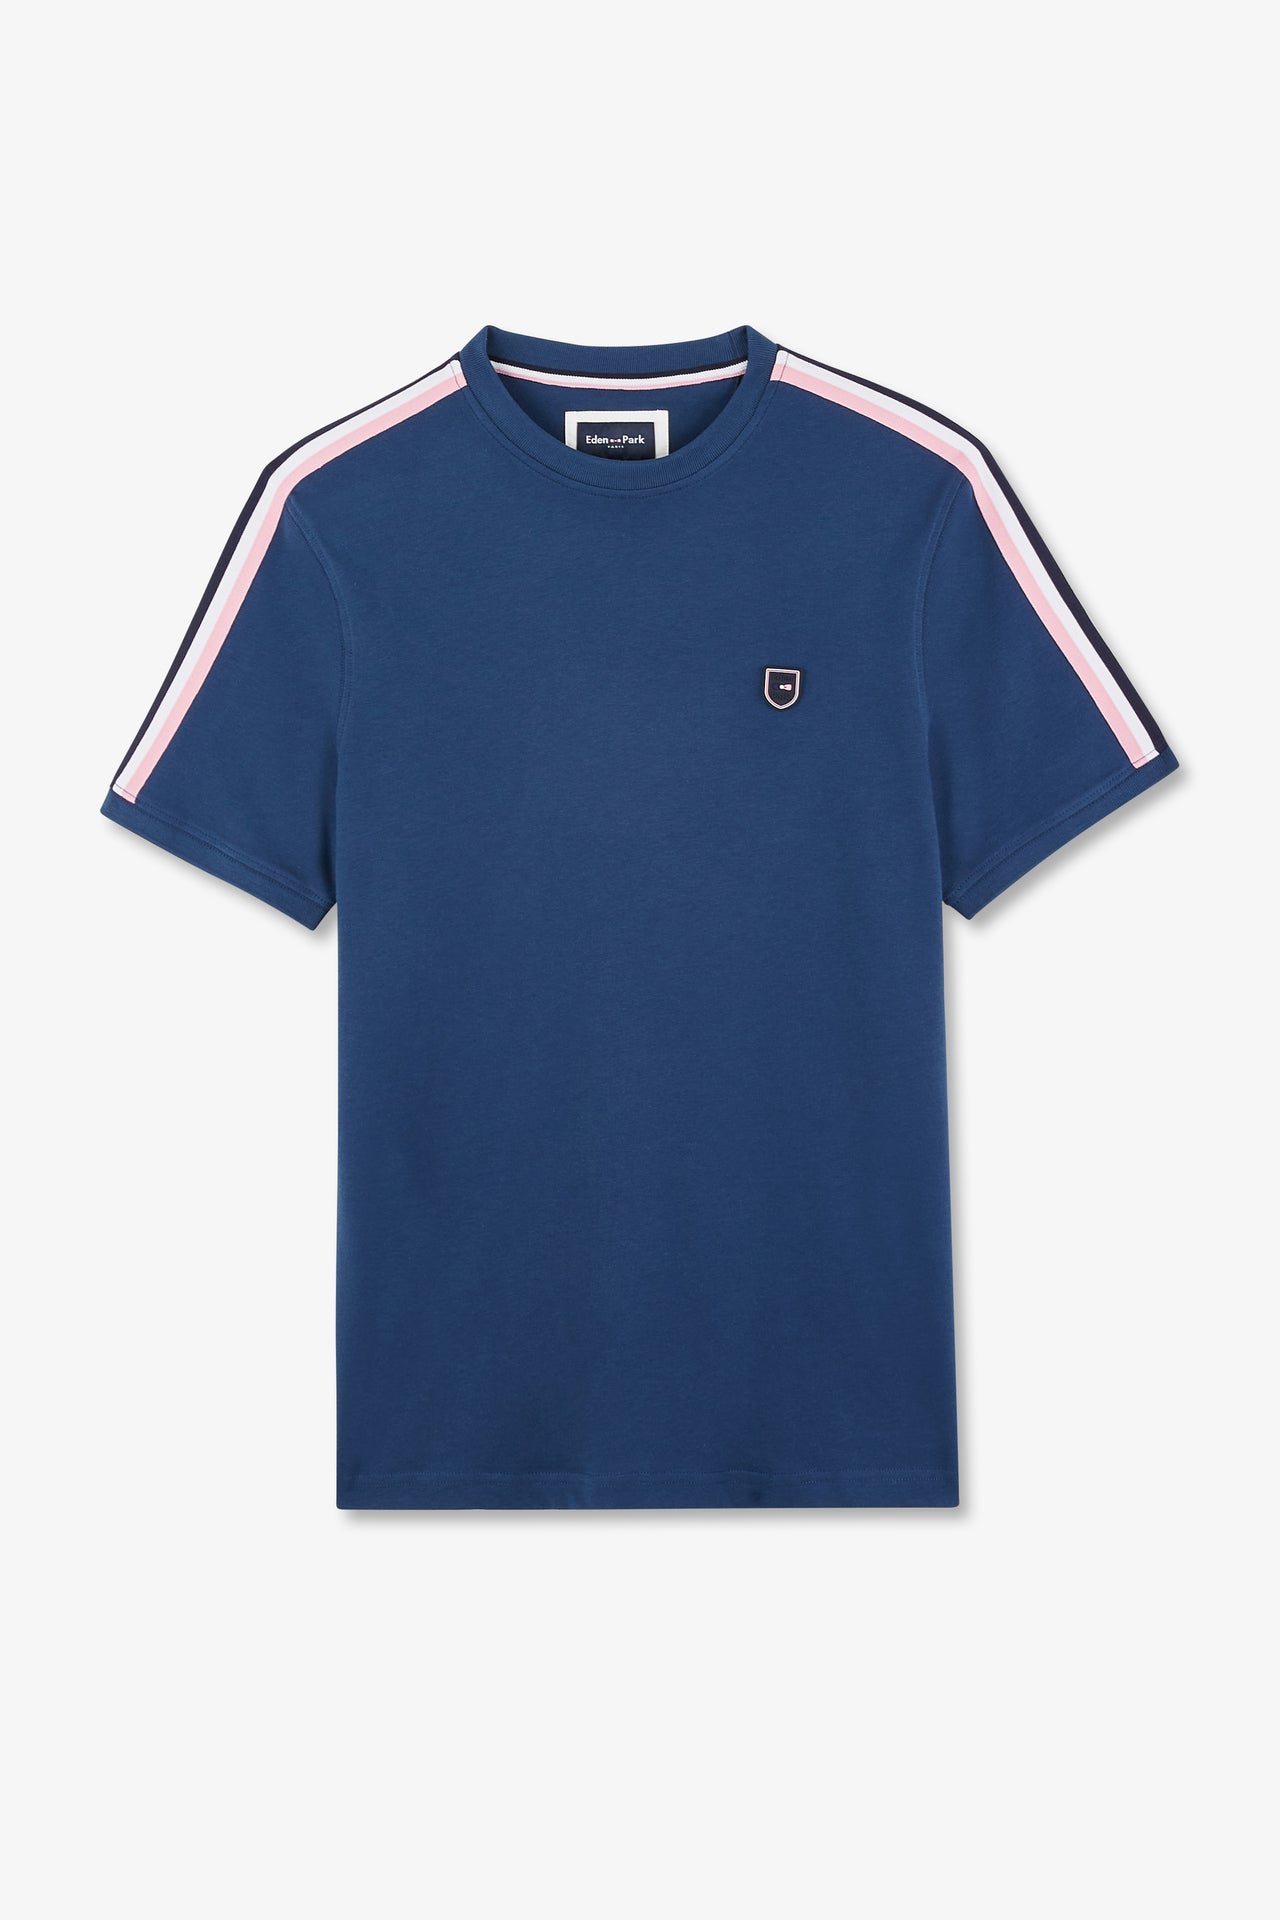 T-shirt manches courtes marine en coton galons épaules tricolores - Image 2